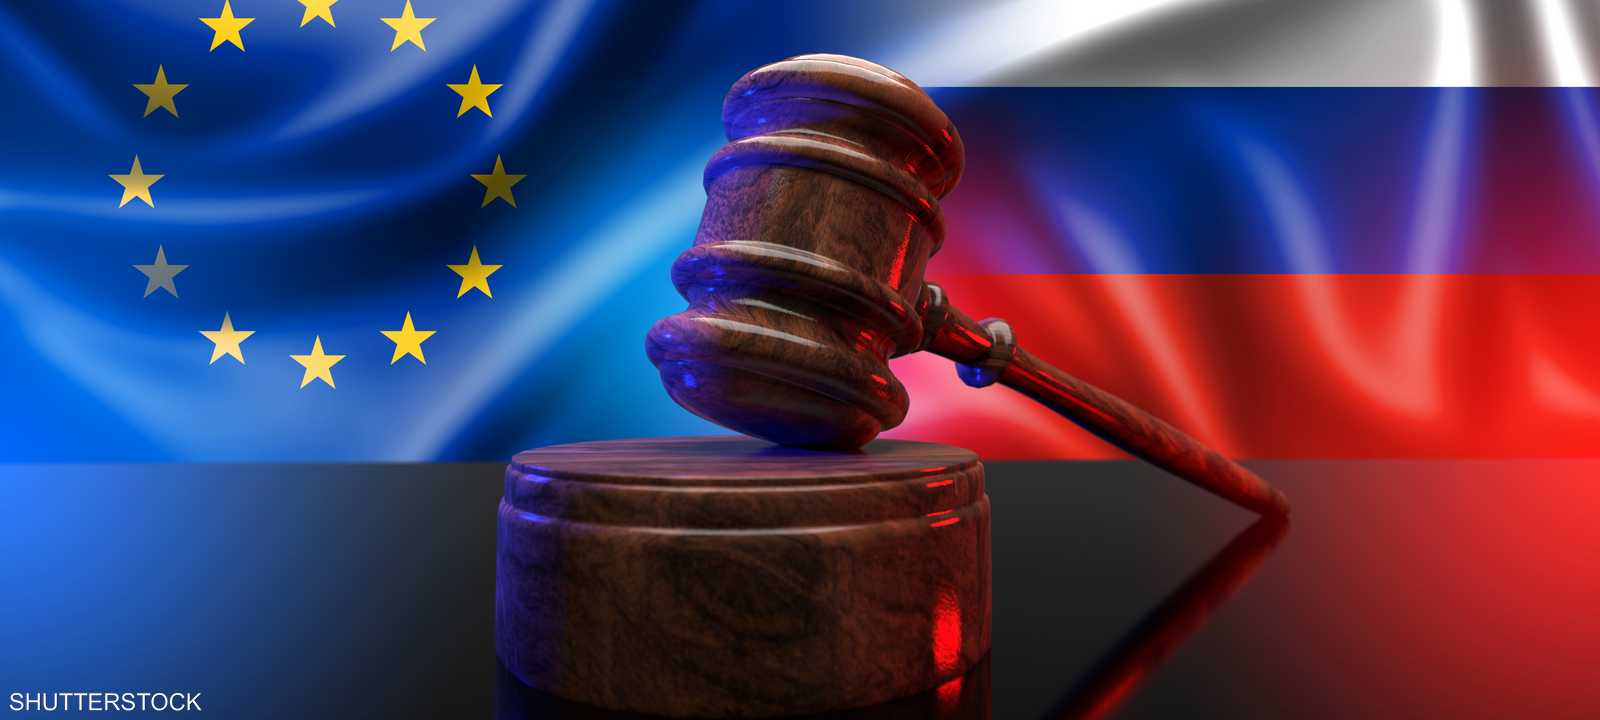 الاتحاد الأوروبي يفرض عقوبات ضد روسيا